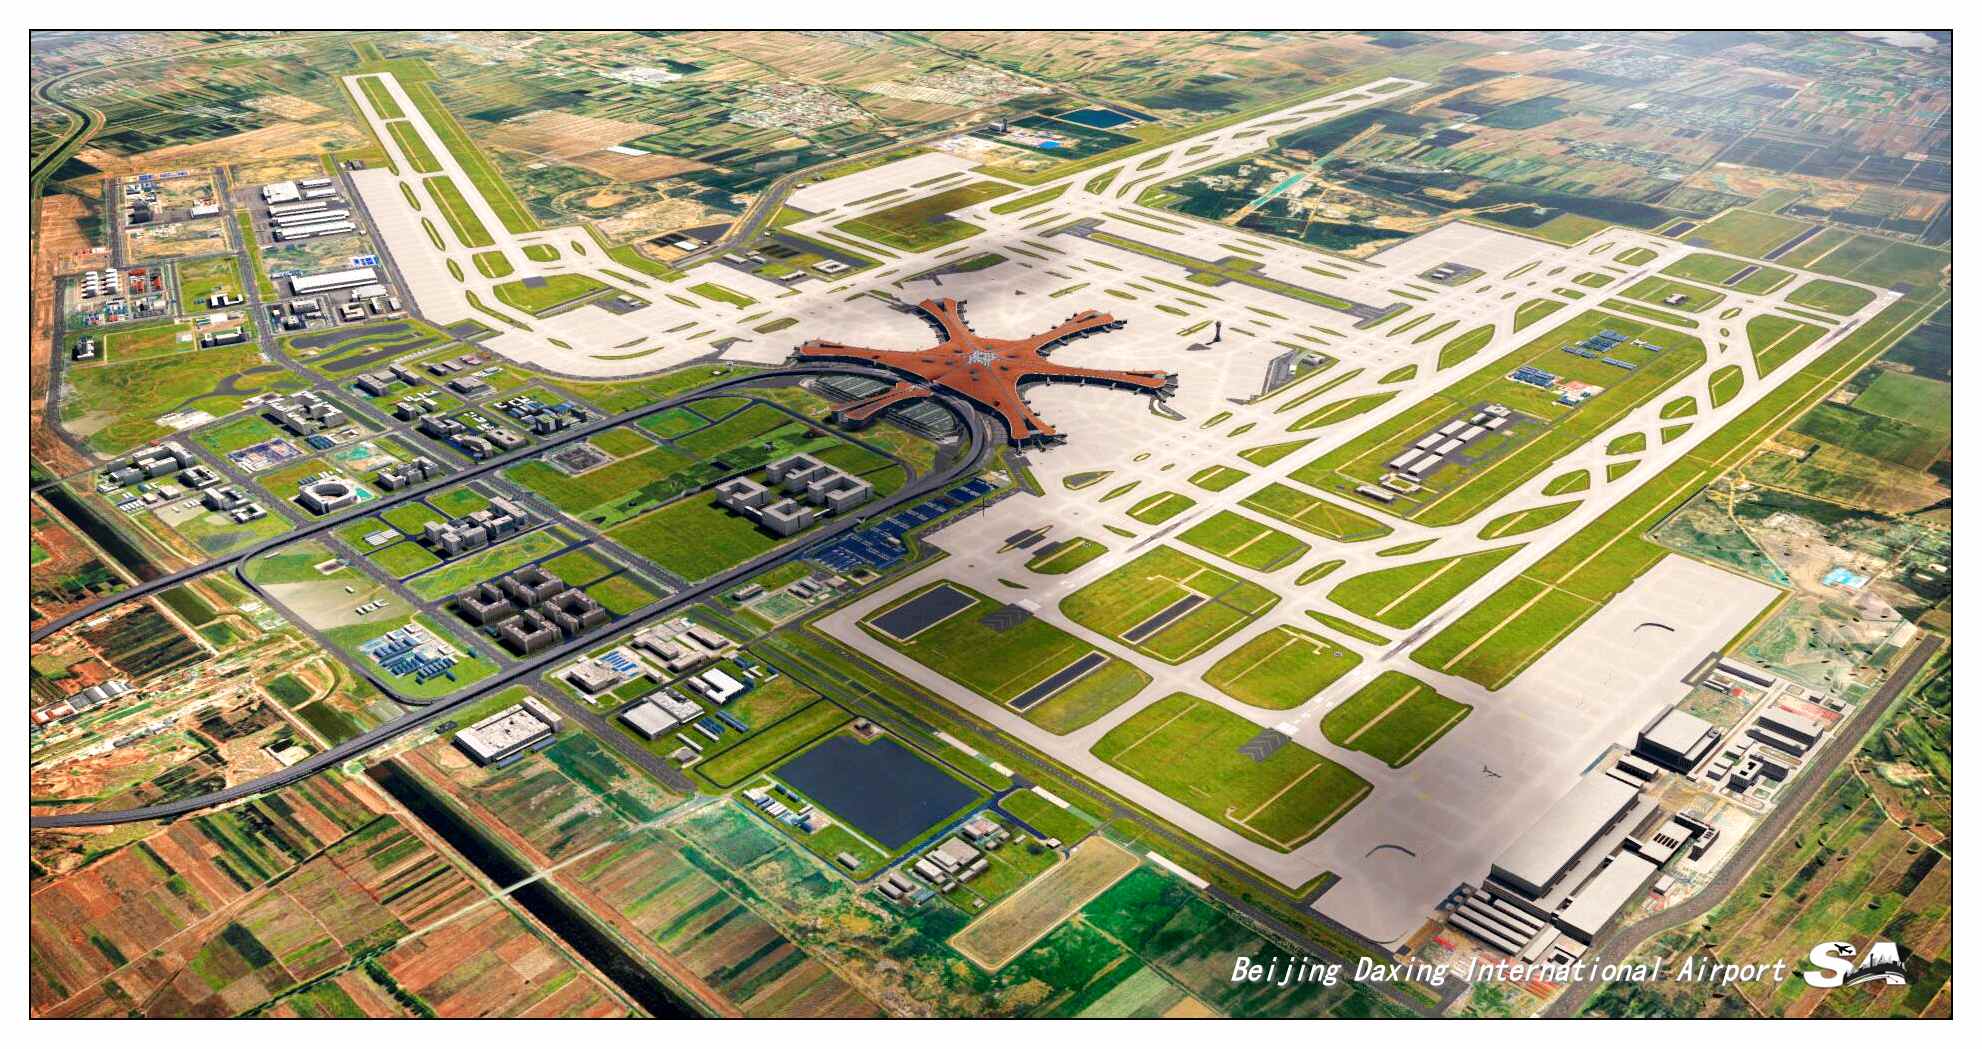 【X-Plane】ZBAD北京大兴国际机场-正式发布-9590 